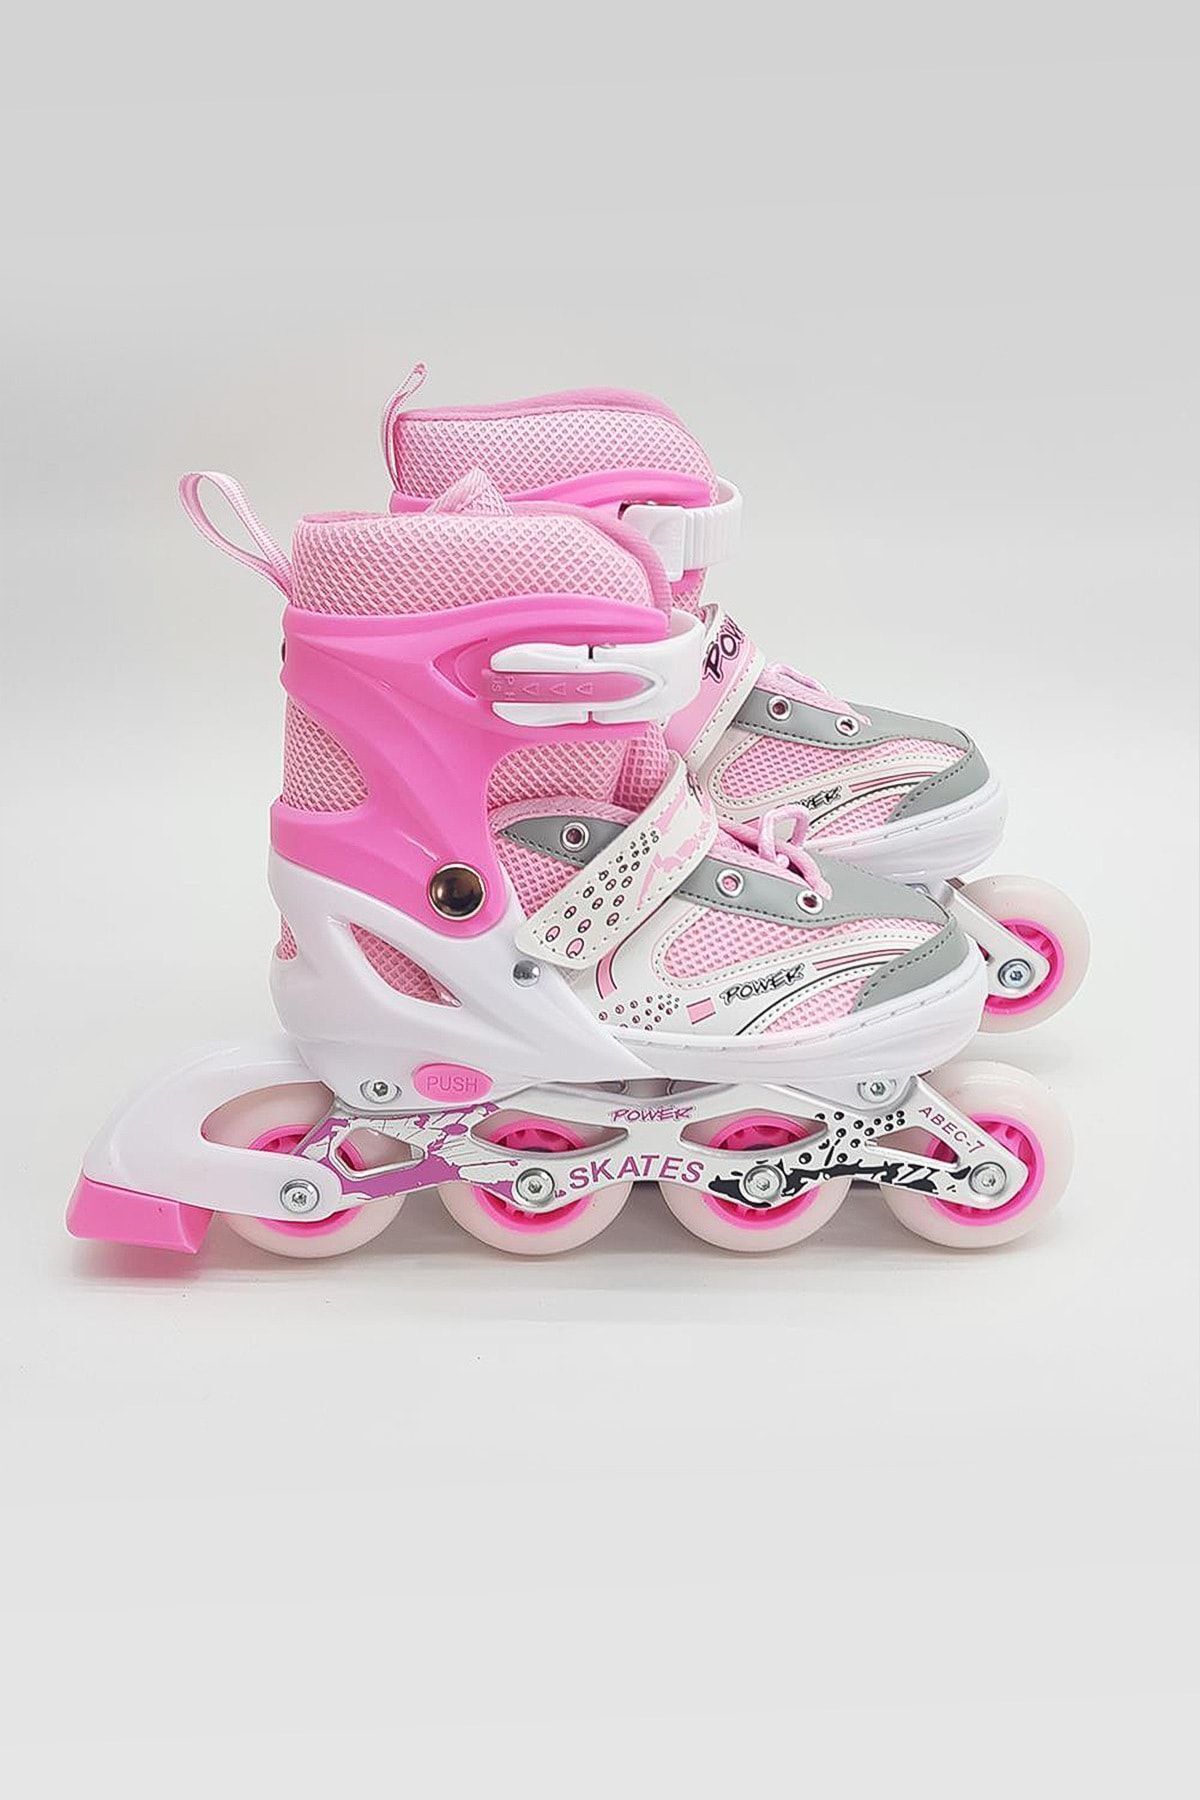 POWER Orjinal Işıklı 2 + 1 Tekerlek Ayarlanabilir Pembe Kız Çocuk Pateni Girl Pink Skates